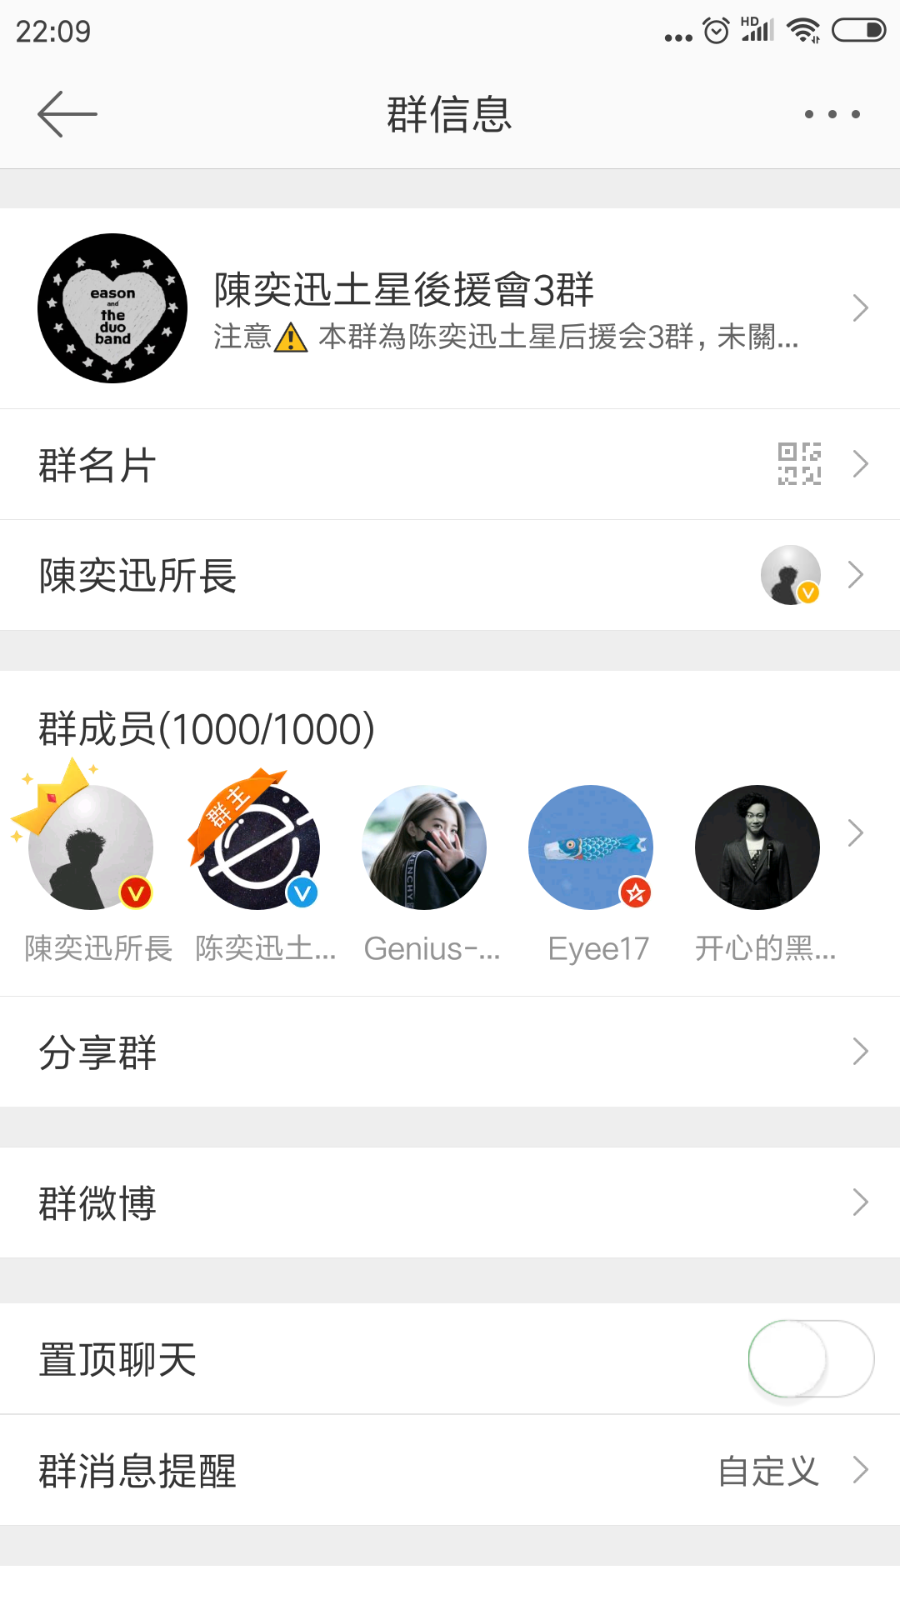 Screenshot_2018-11-29-22-09-20-038_com.sina.weibo.png